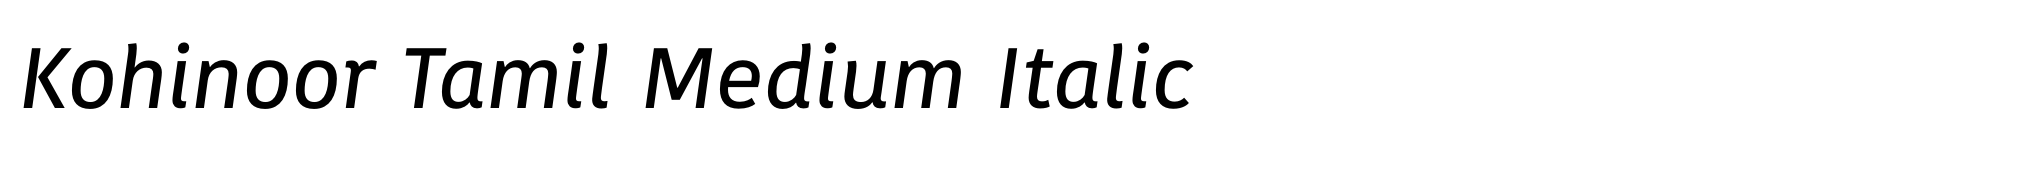 Kohinoor Tamil Medium Italic image